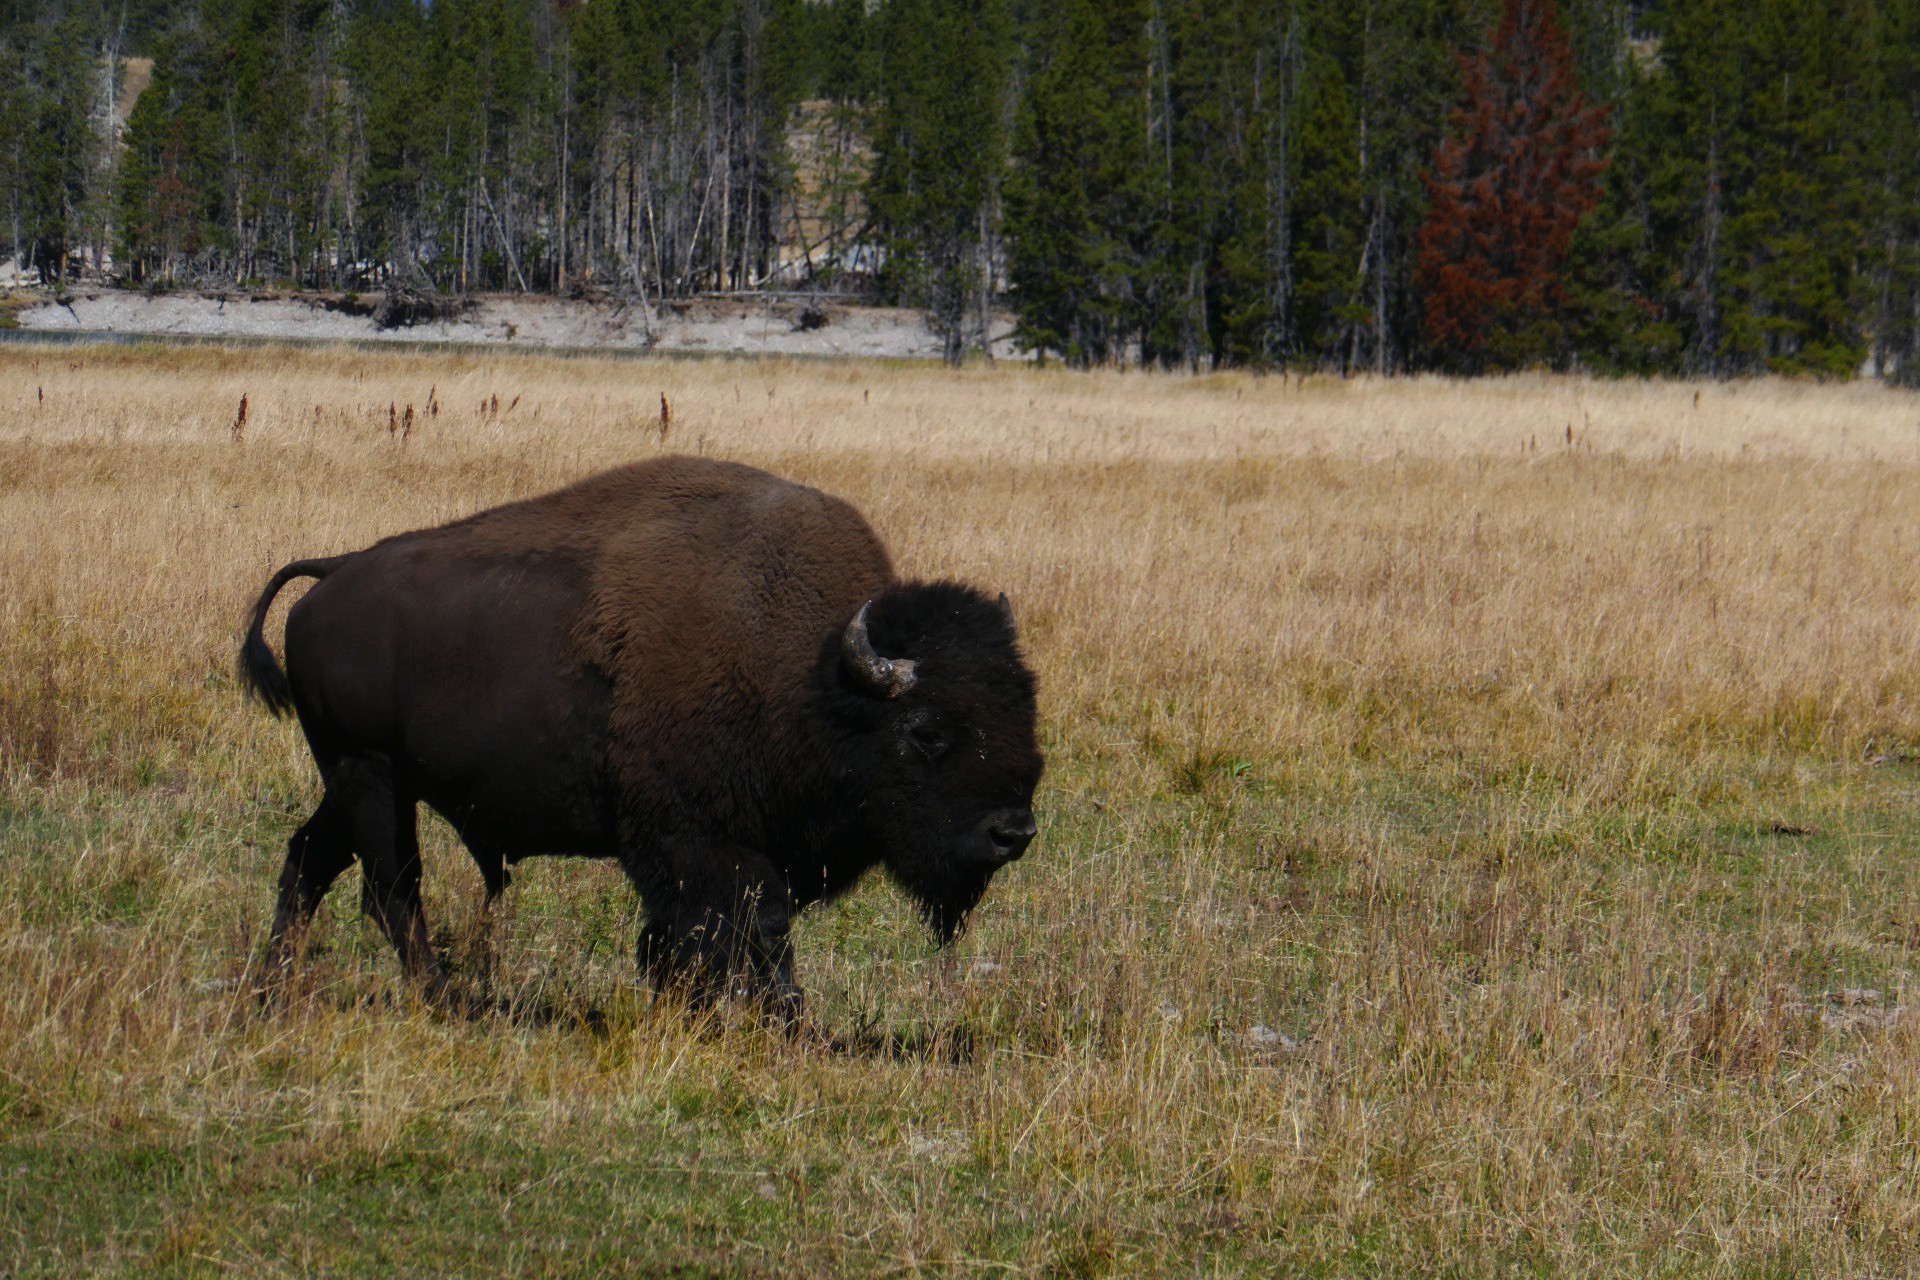 Le bison , maitre de Yellowstone